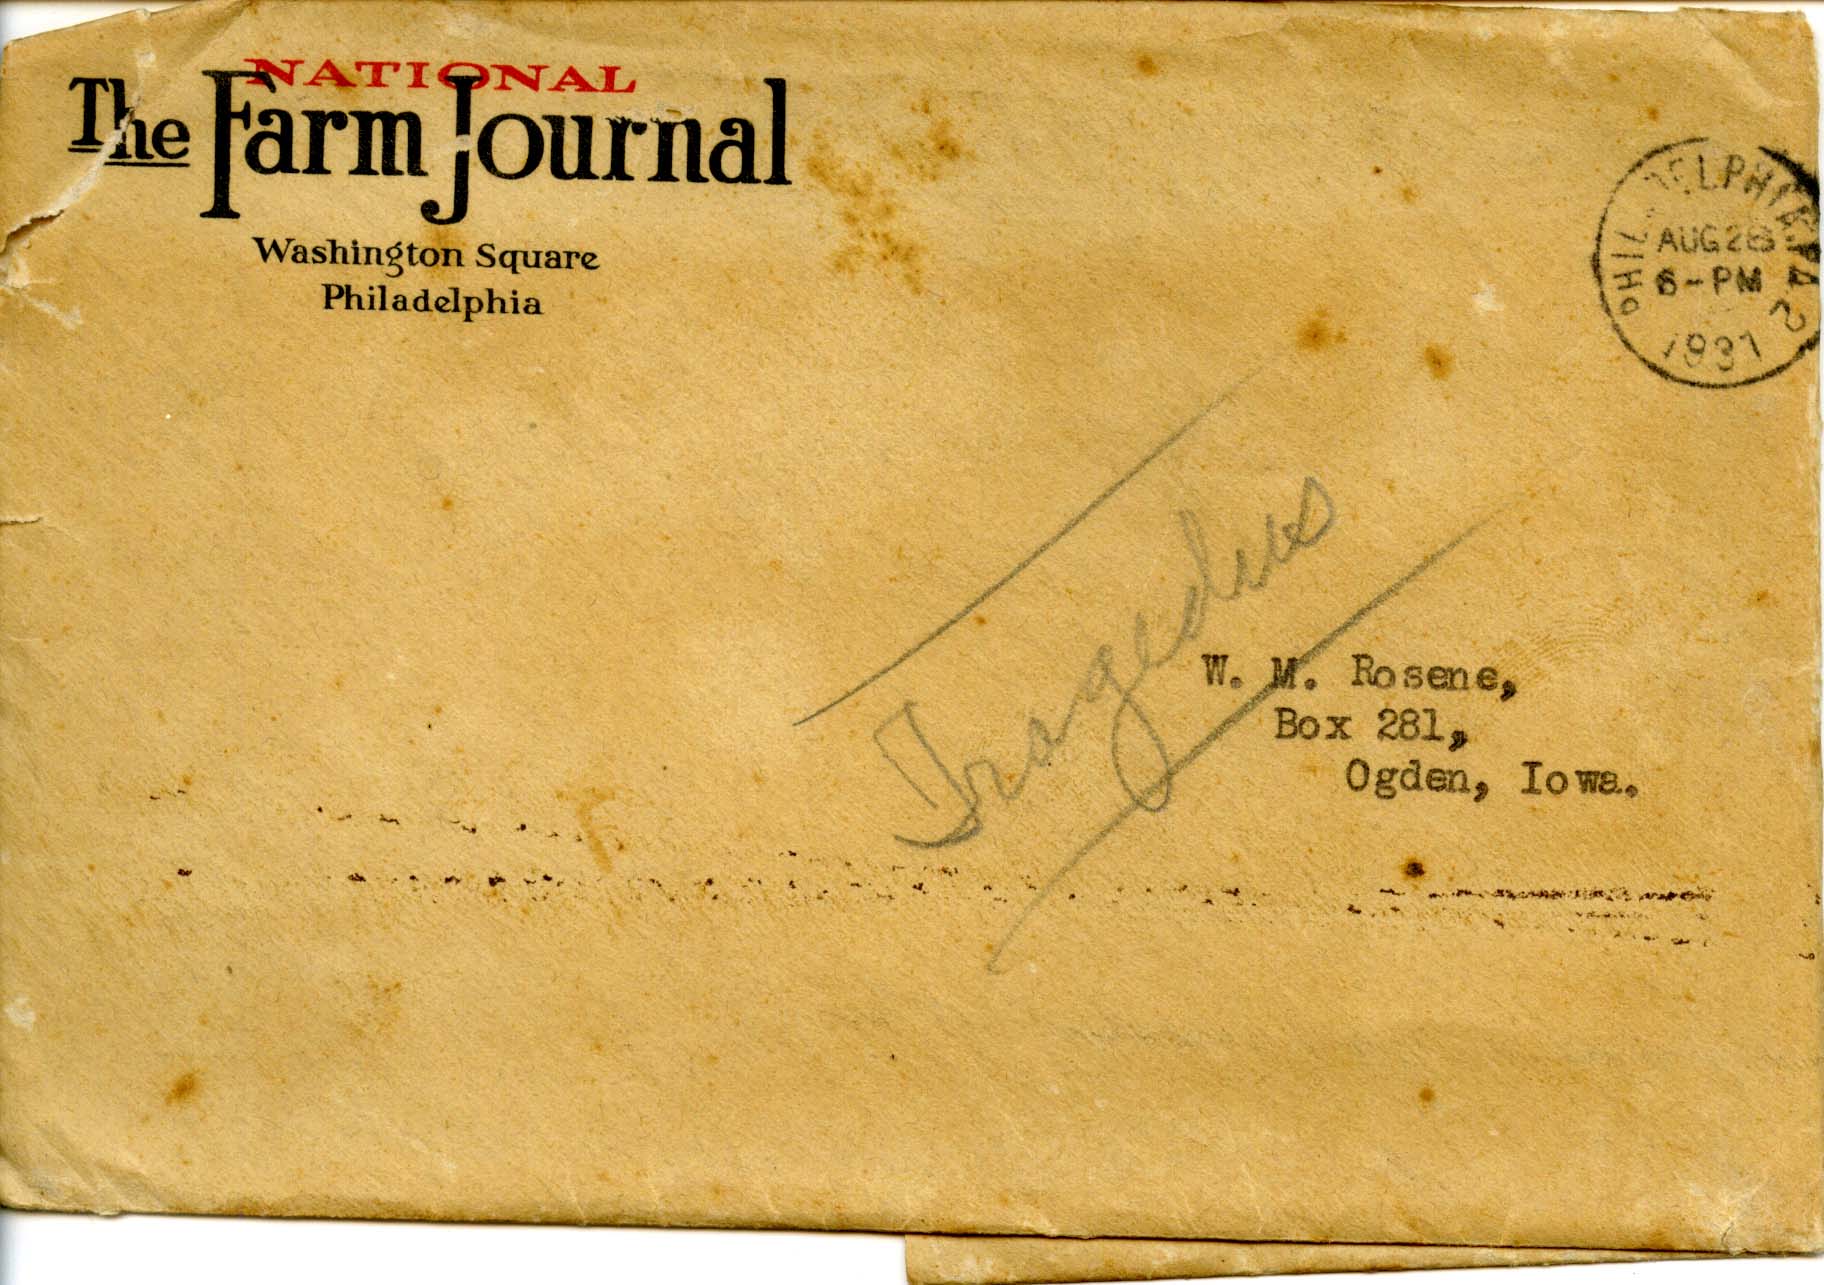 National Farm Journal envelope addressed to Walter Rosene, August 28, 1931